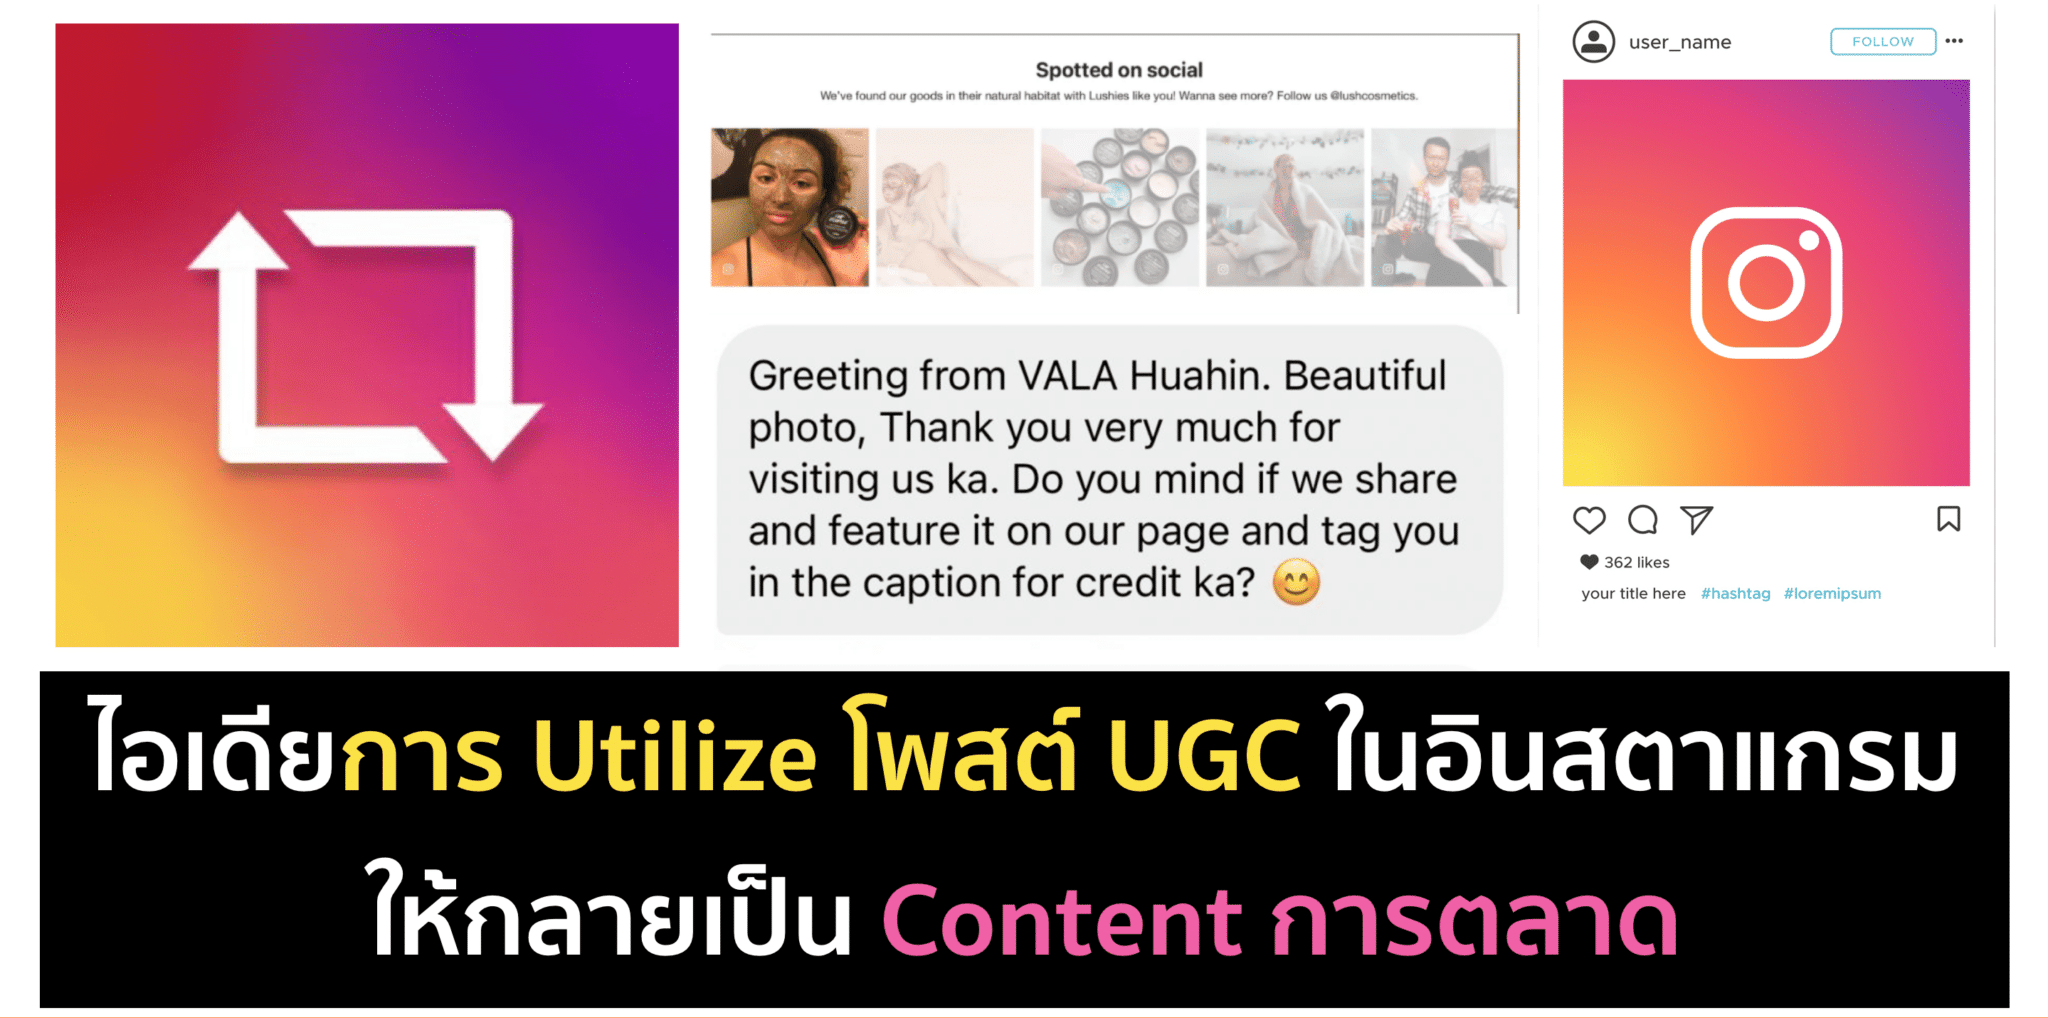 ไอเดียการ Utilize เนื้อหา UGC บน Instagram